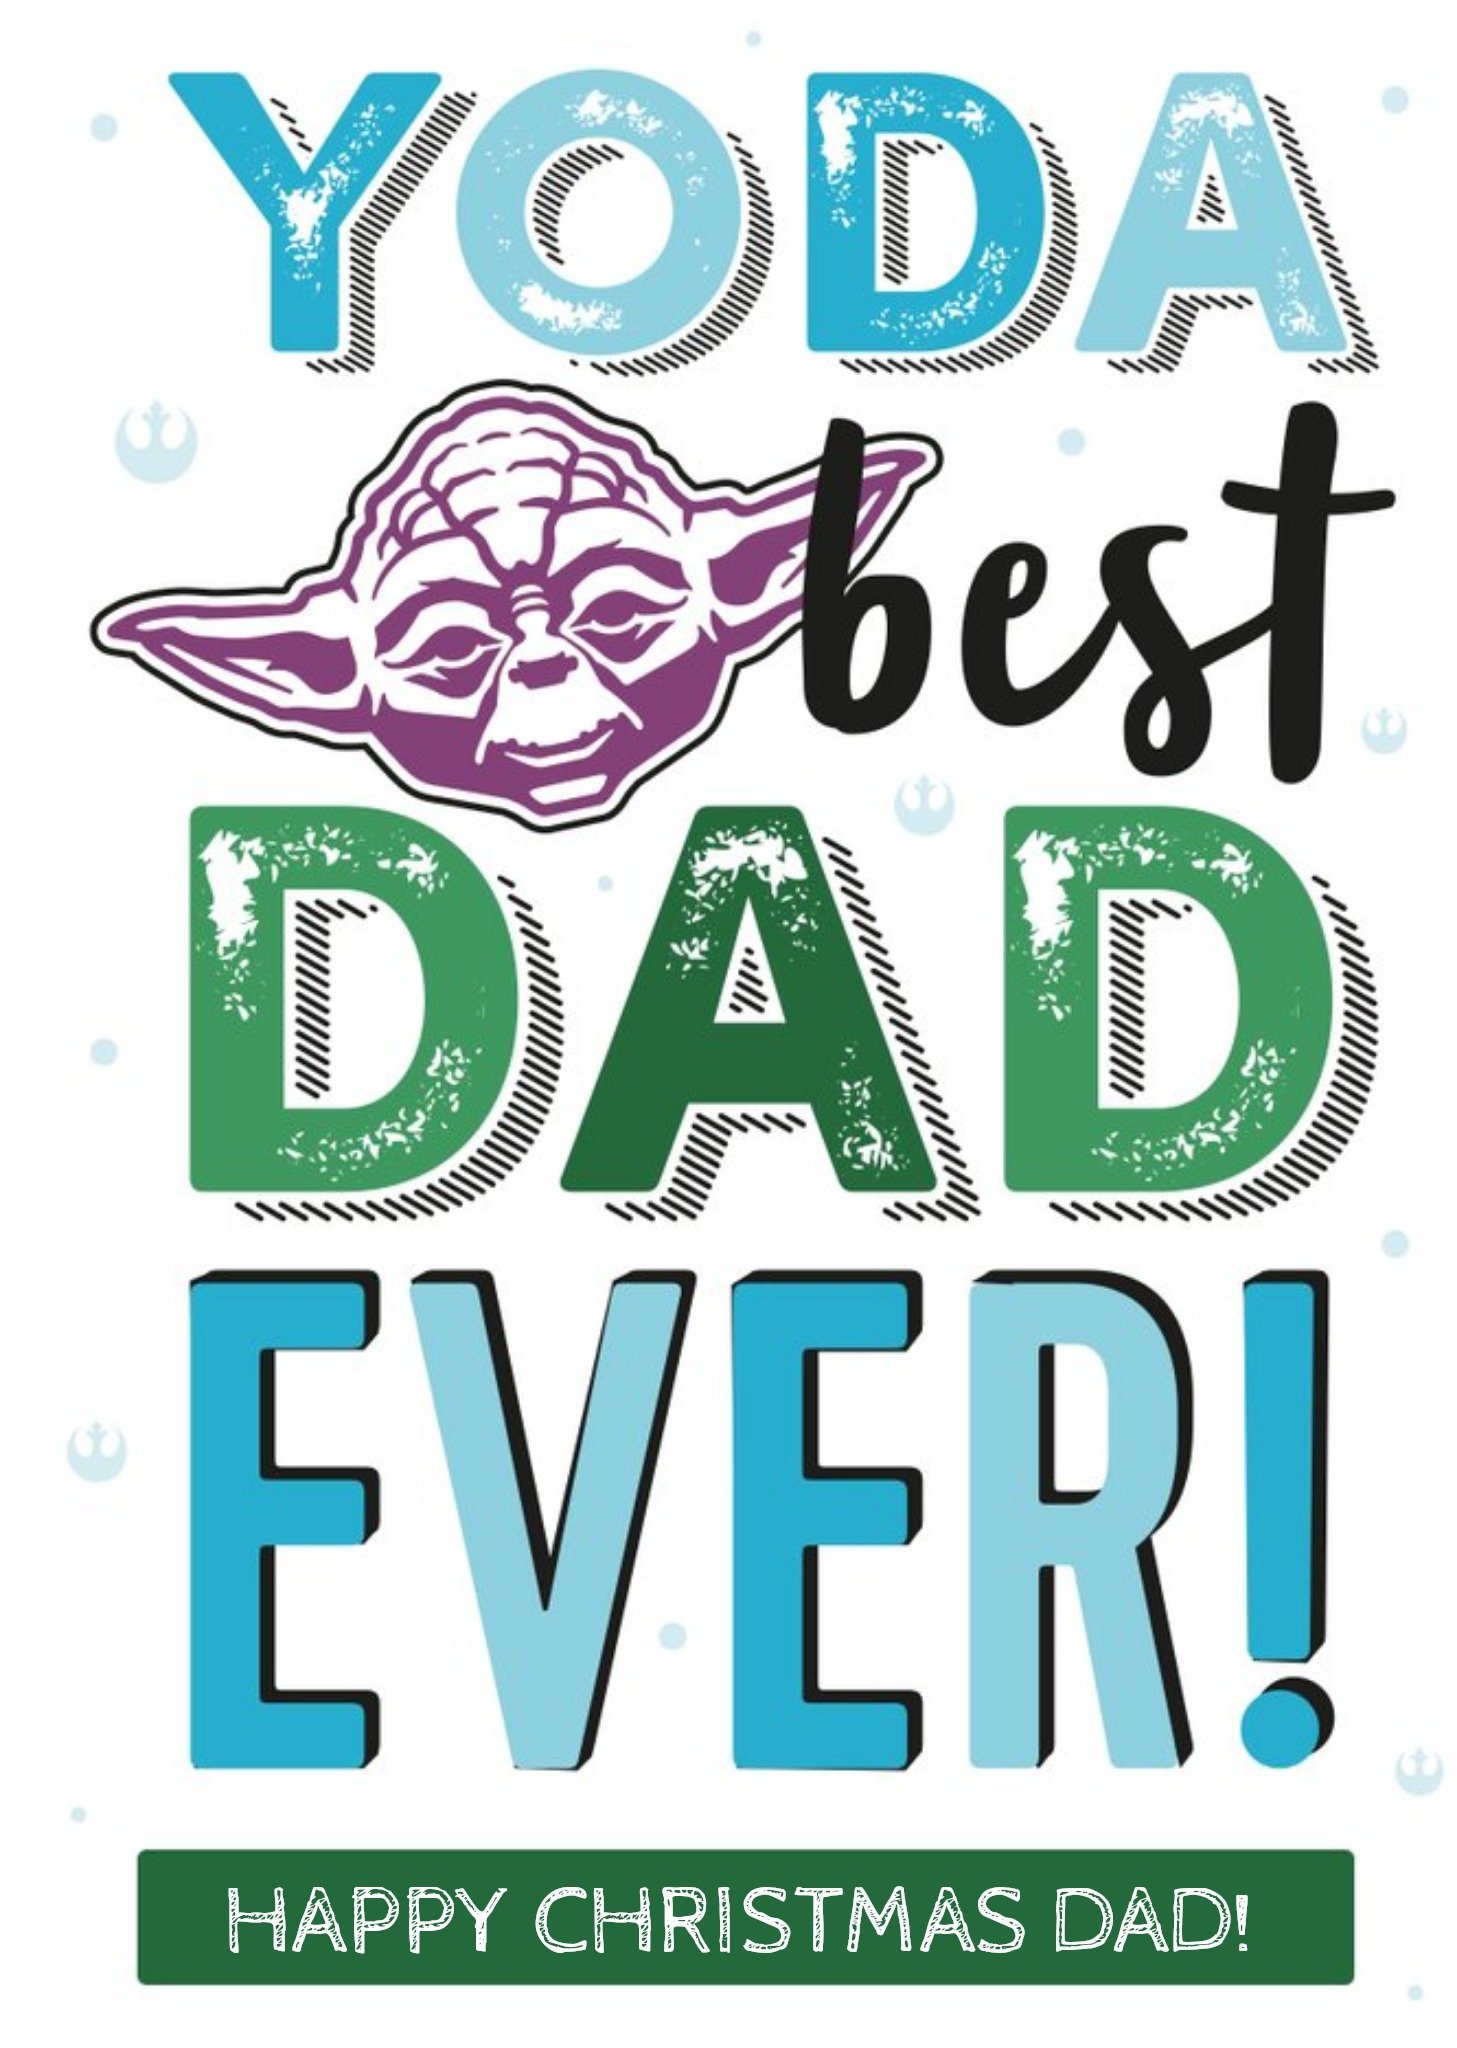 Disney Star Wars Yoda Best Dad Christmas Card Ecard